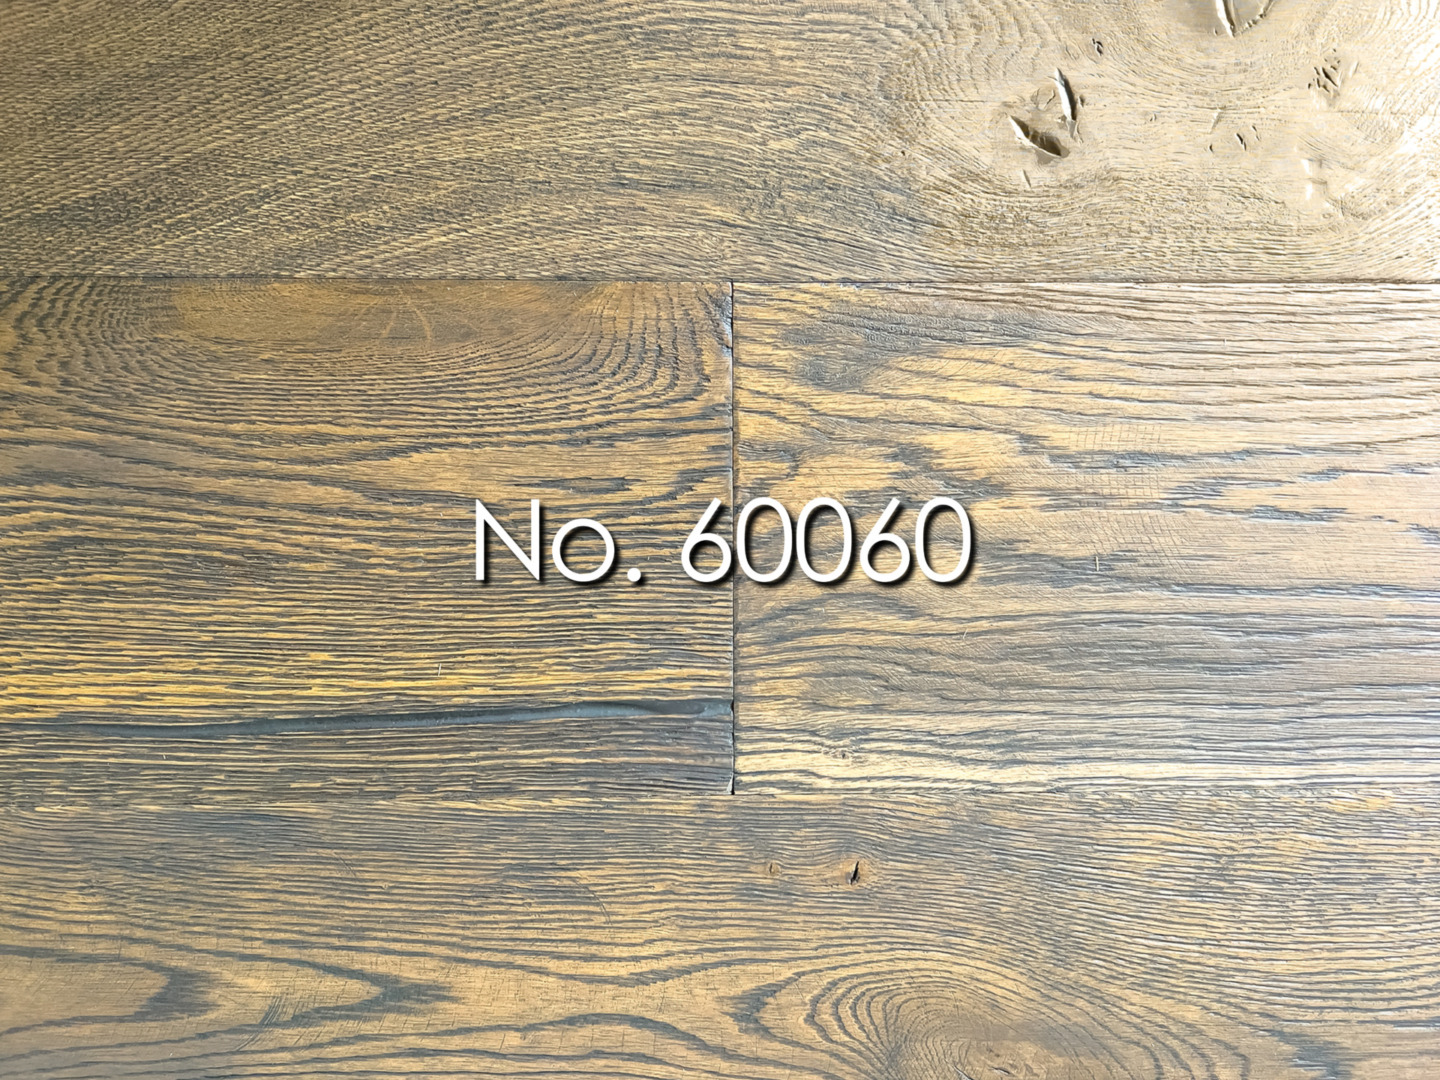 No. 60060